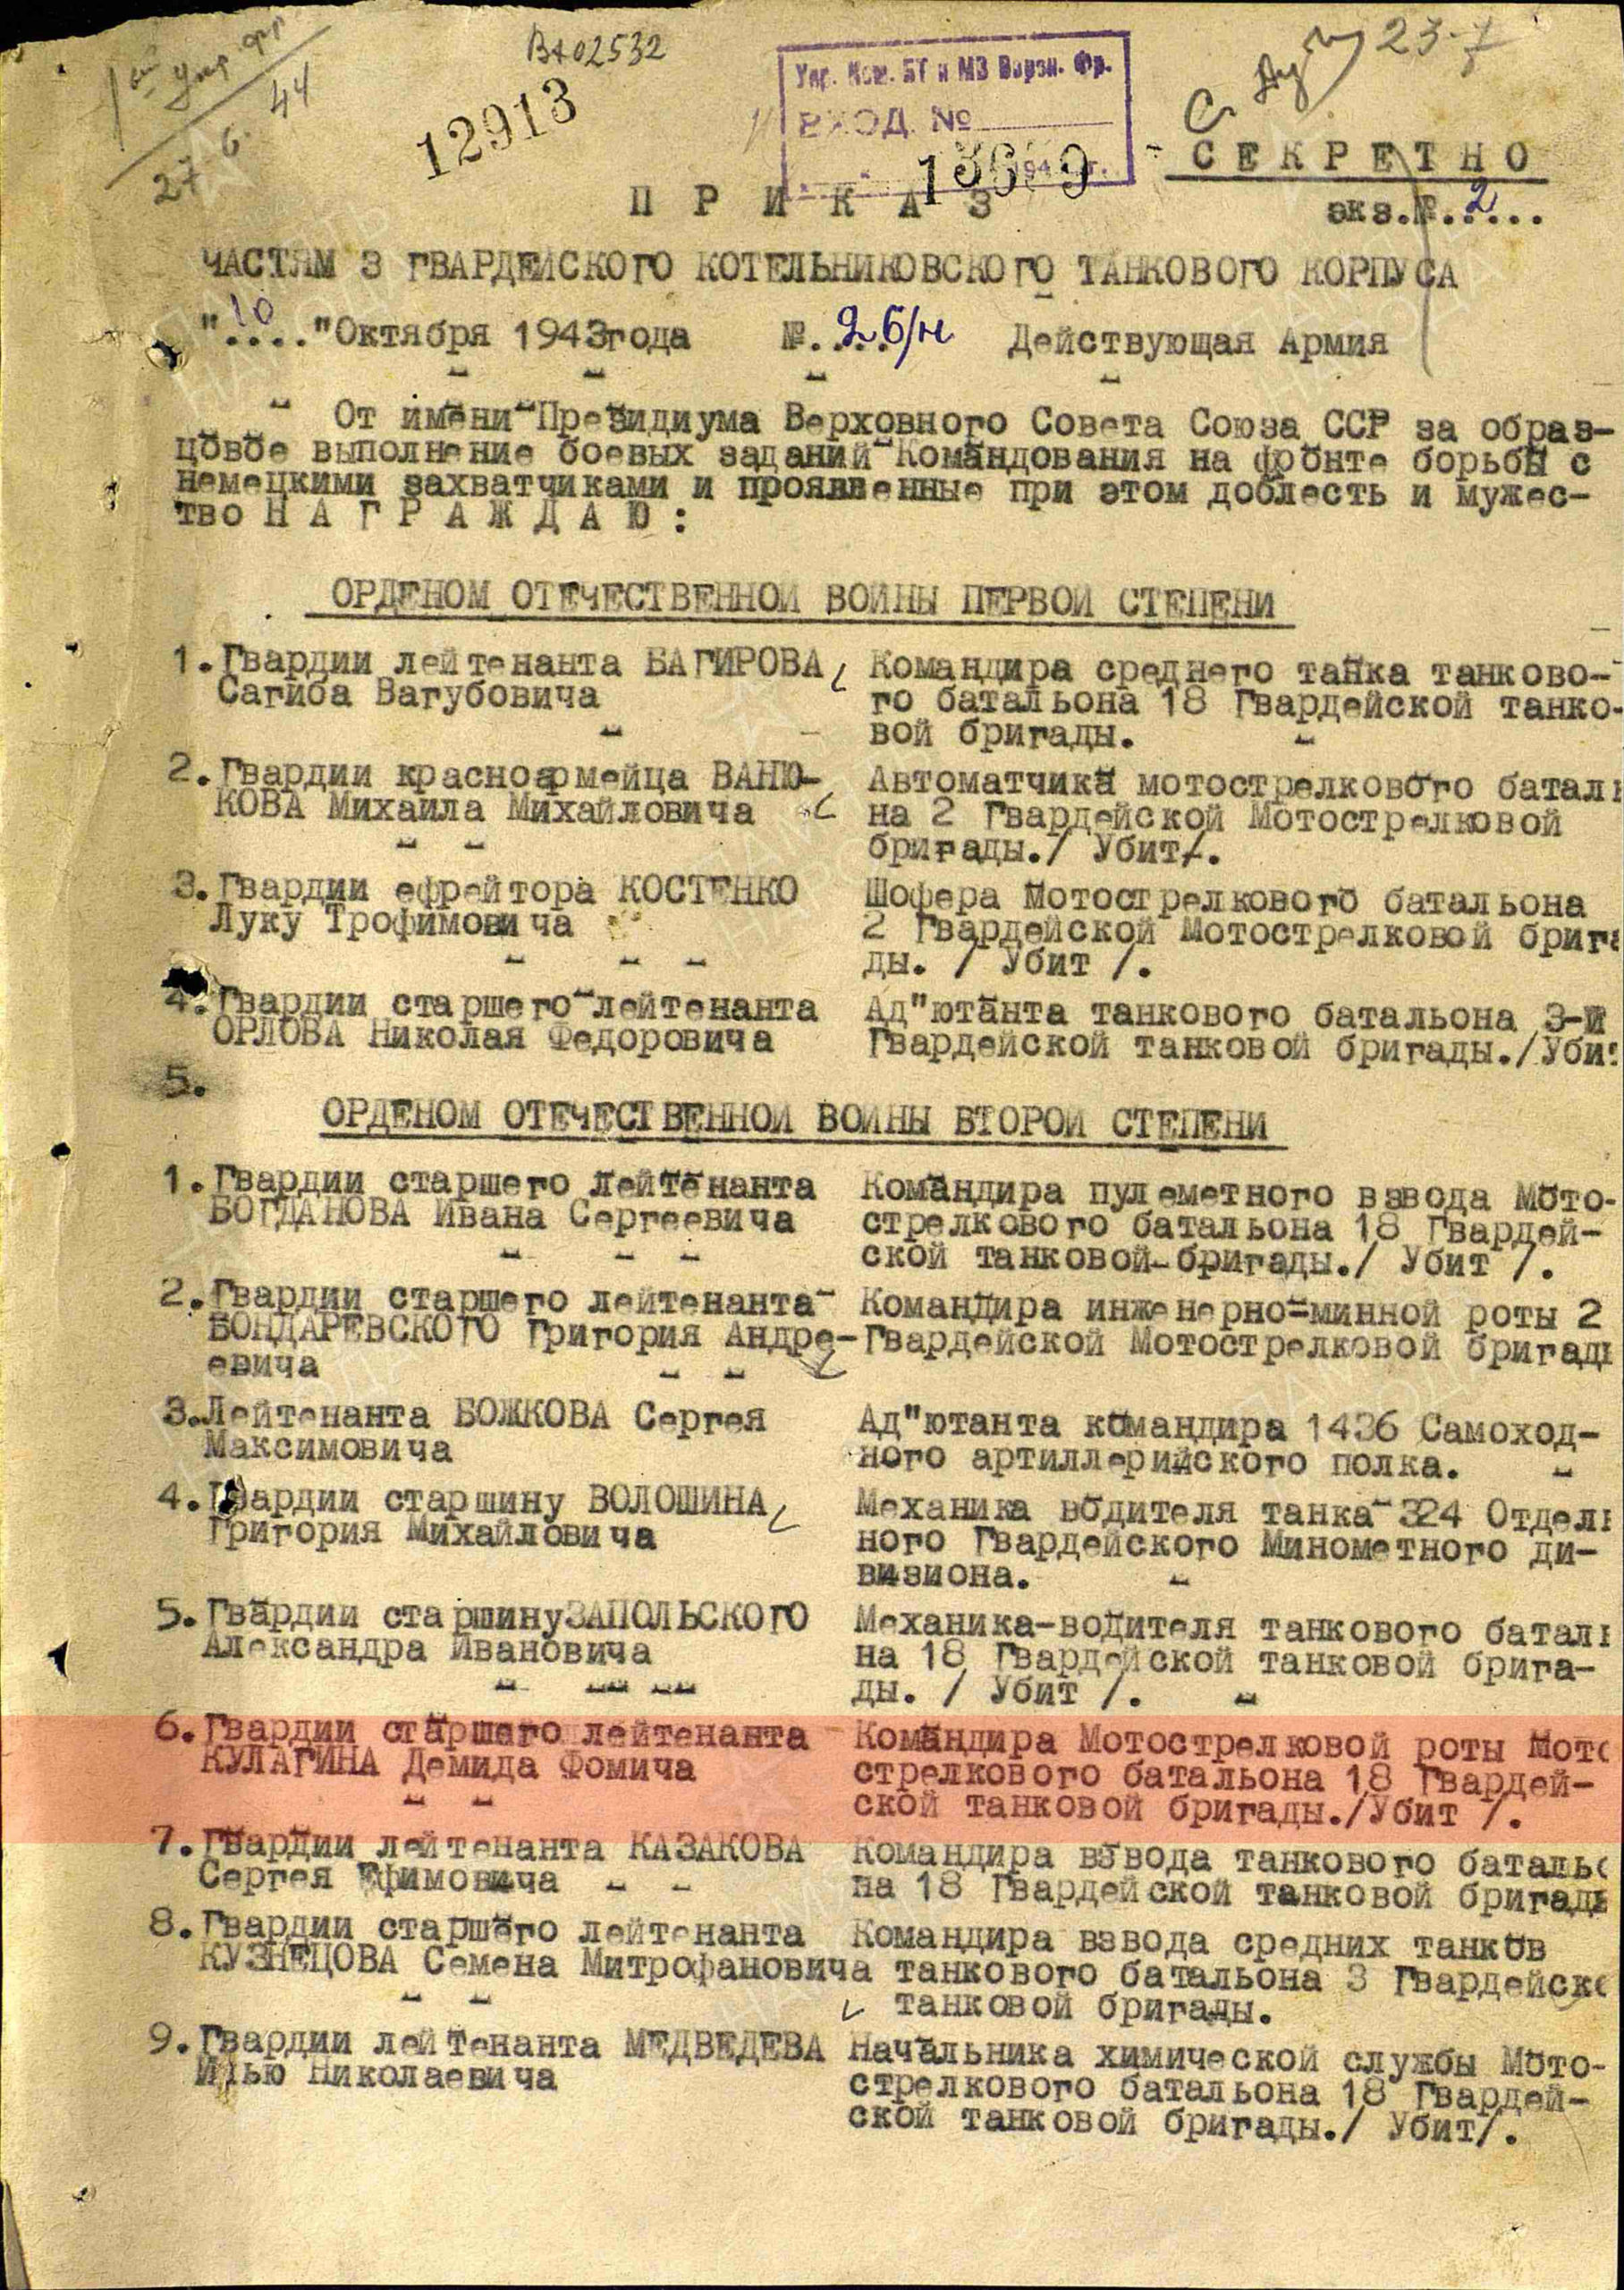 3. Лист приказа о награждении (строка в наградном списке). Орден Отечественной войны II степени